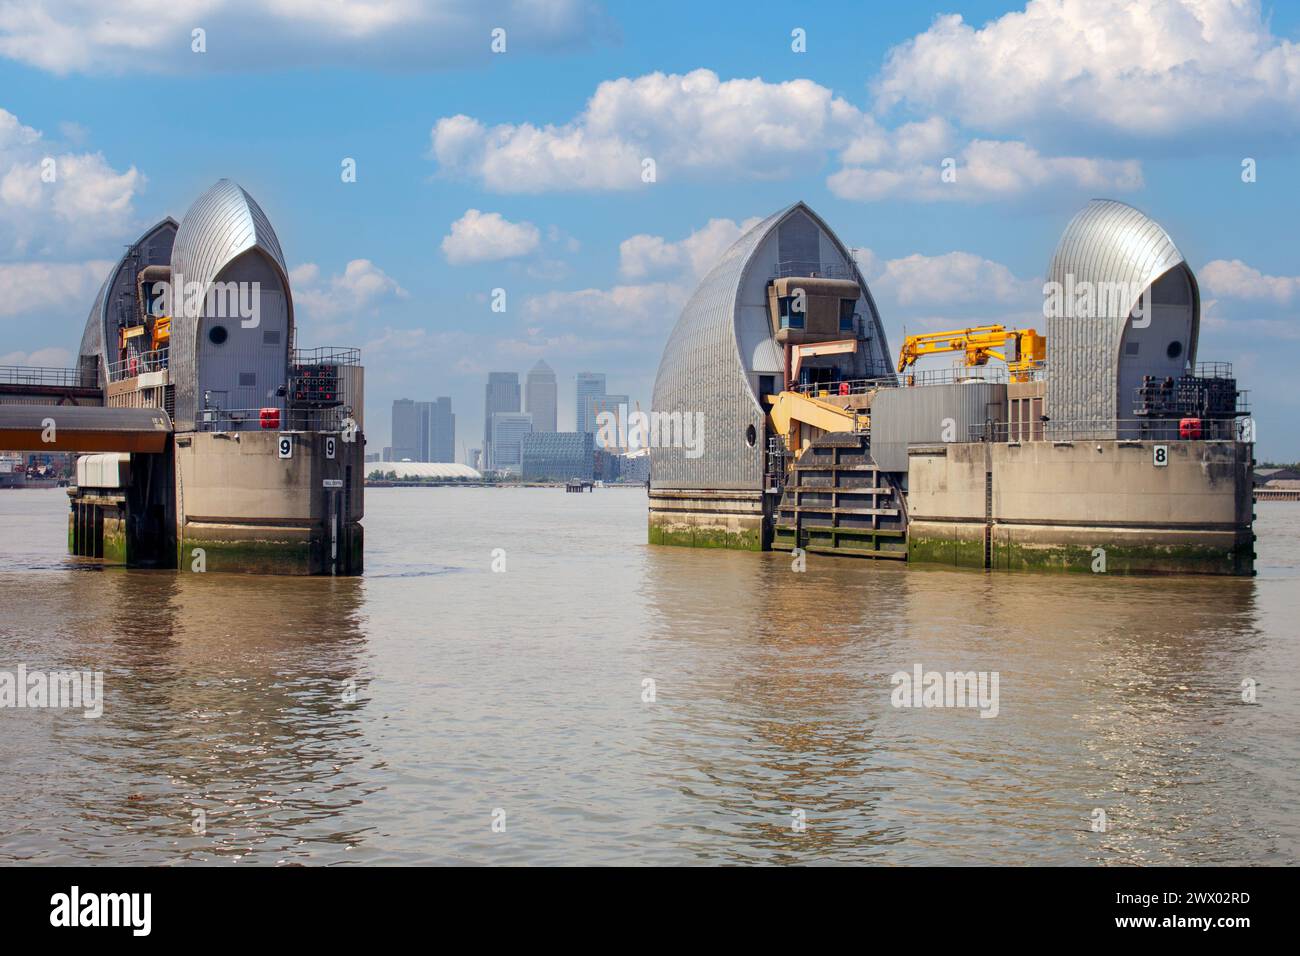 Royaume-Uni, Londres - barrière d'inondation de la Tamise Banque D'Images